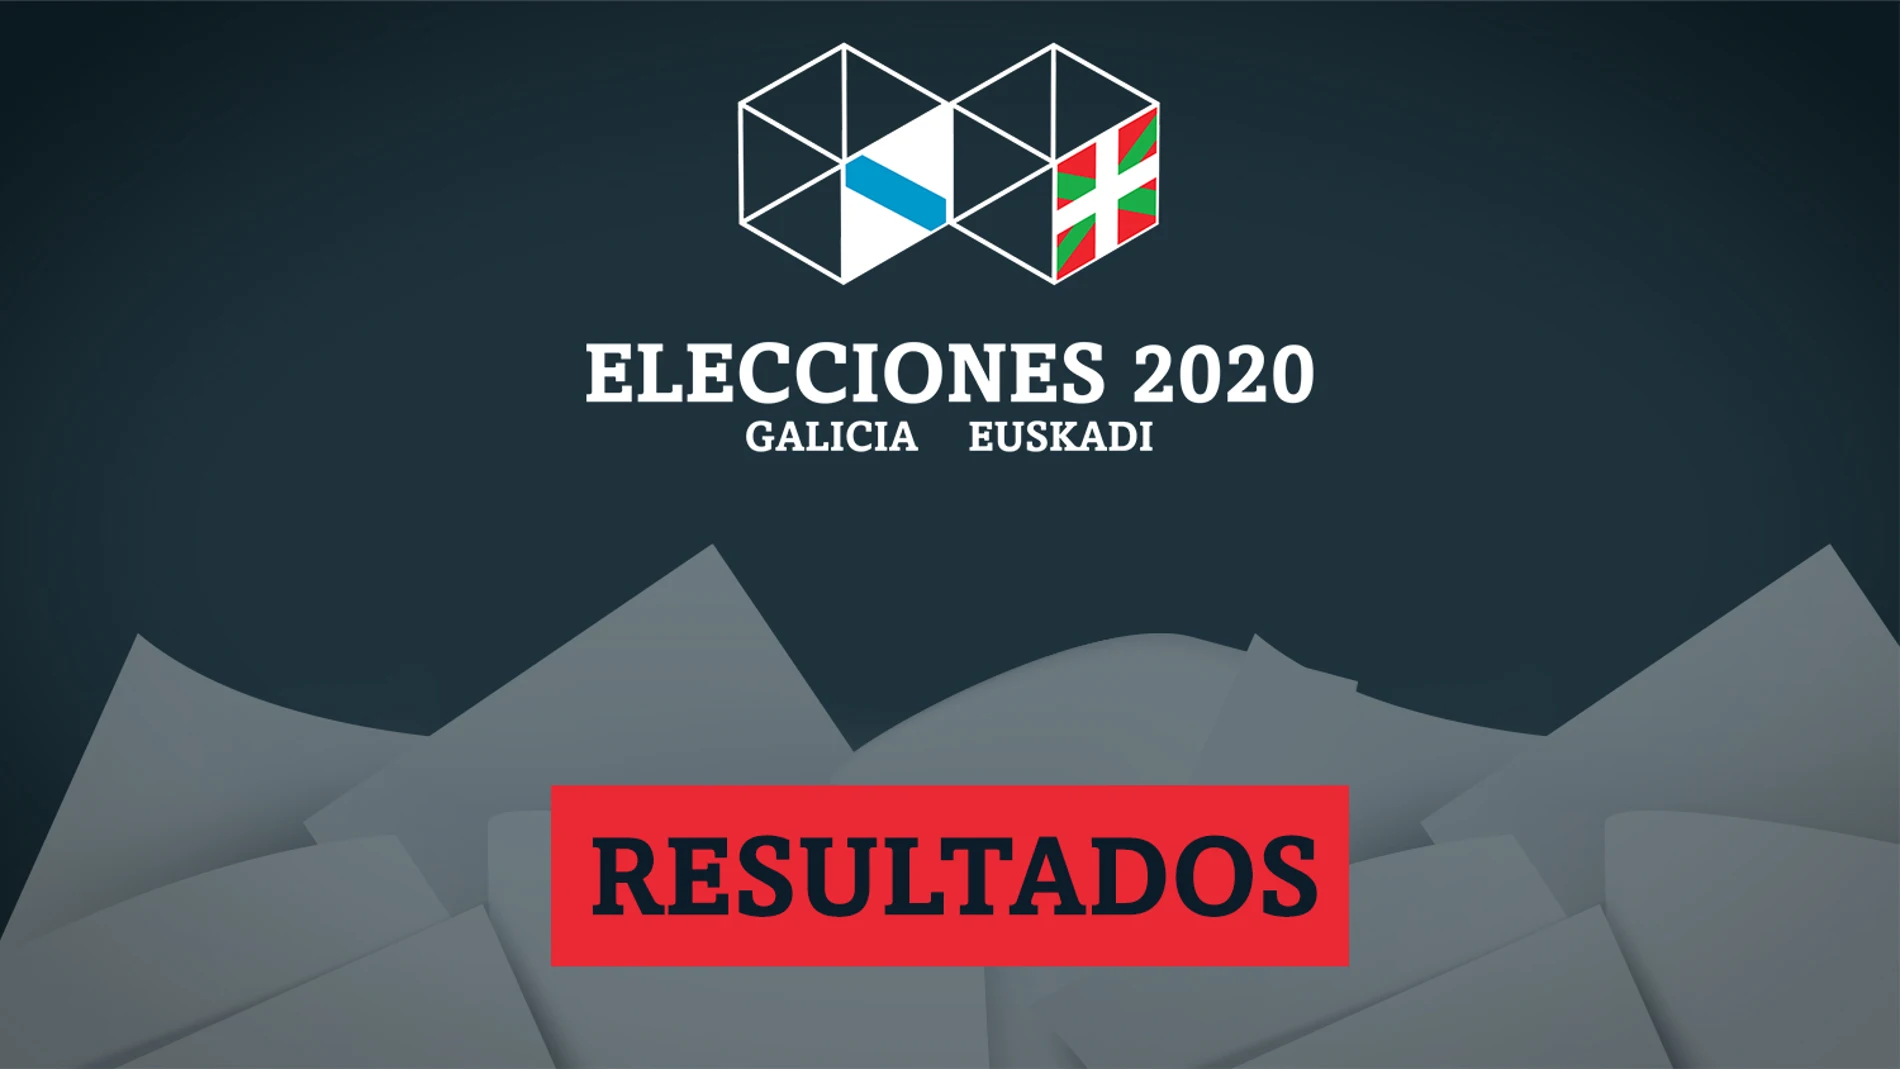 Resultado y escrutinio de las elecciones en Galicia y País Vasco